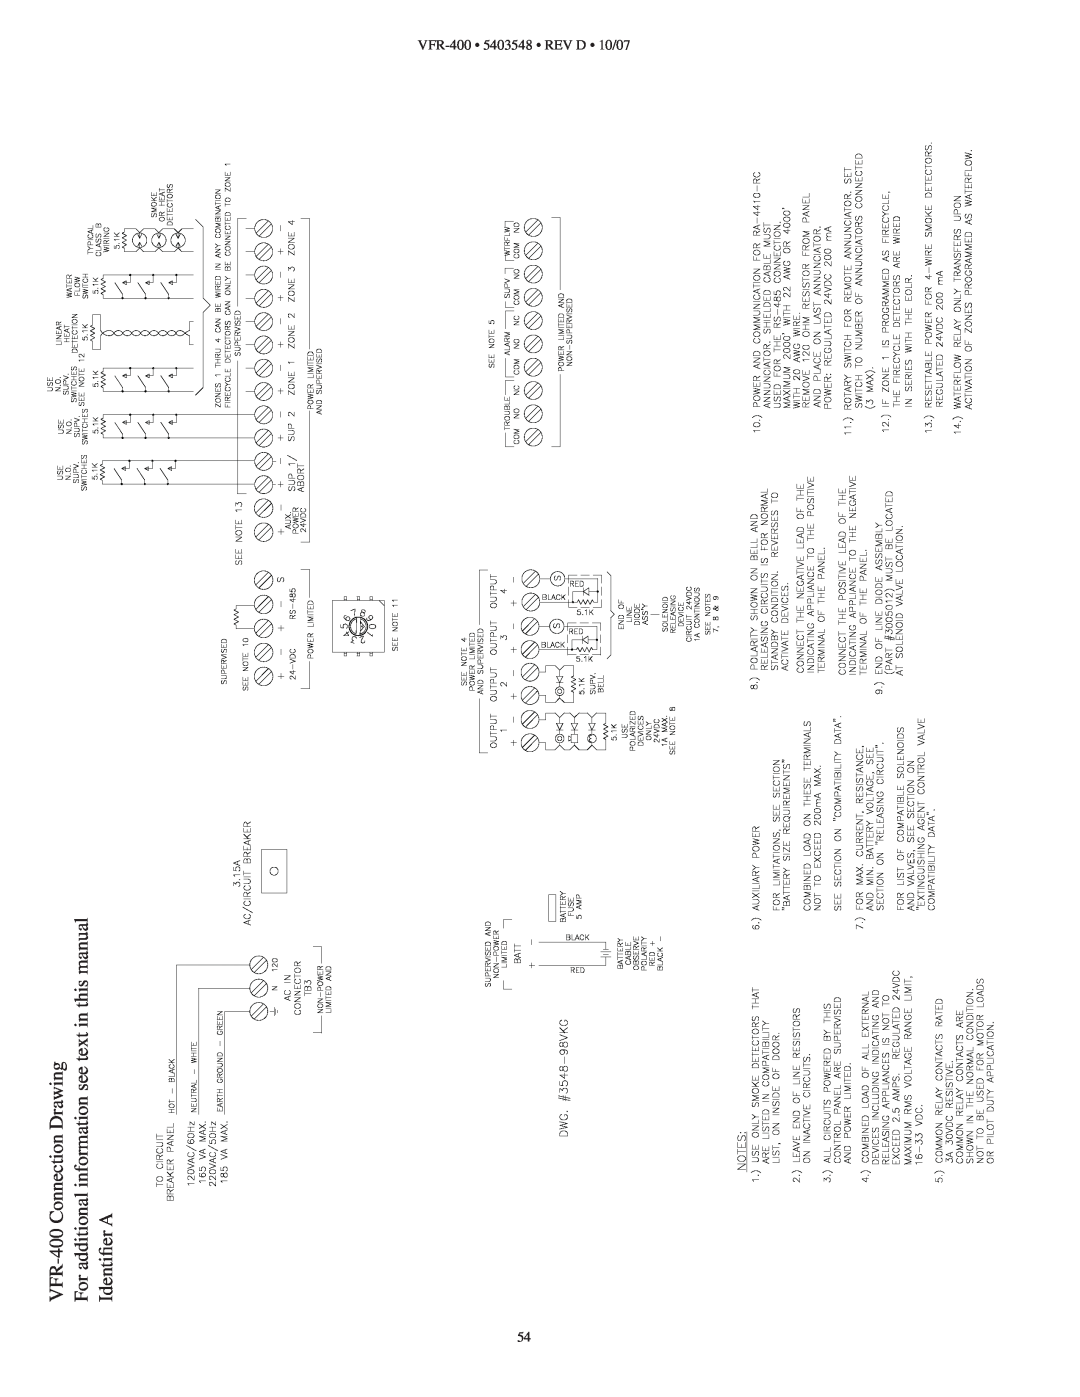 Viking instruction manual Identiﬁer A, VFR-400• 5403548 • REV D • 10/07, VFR-400Connection Drawing 